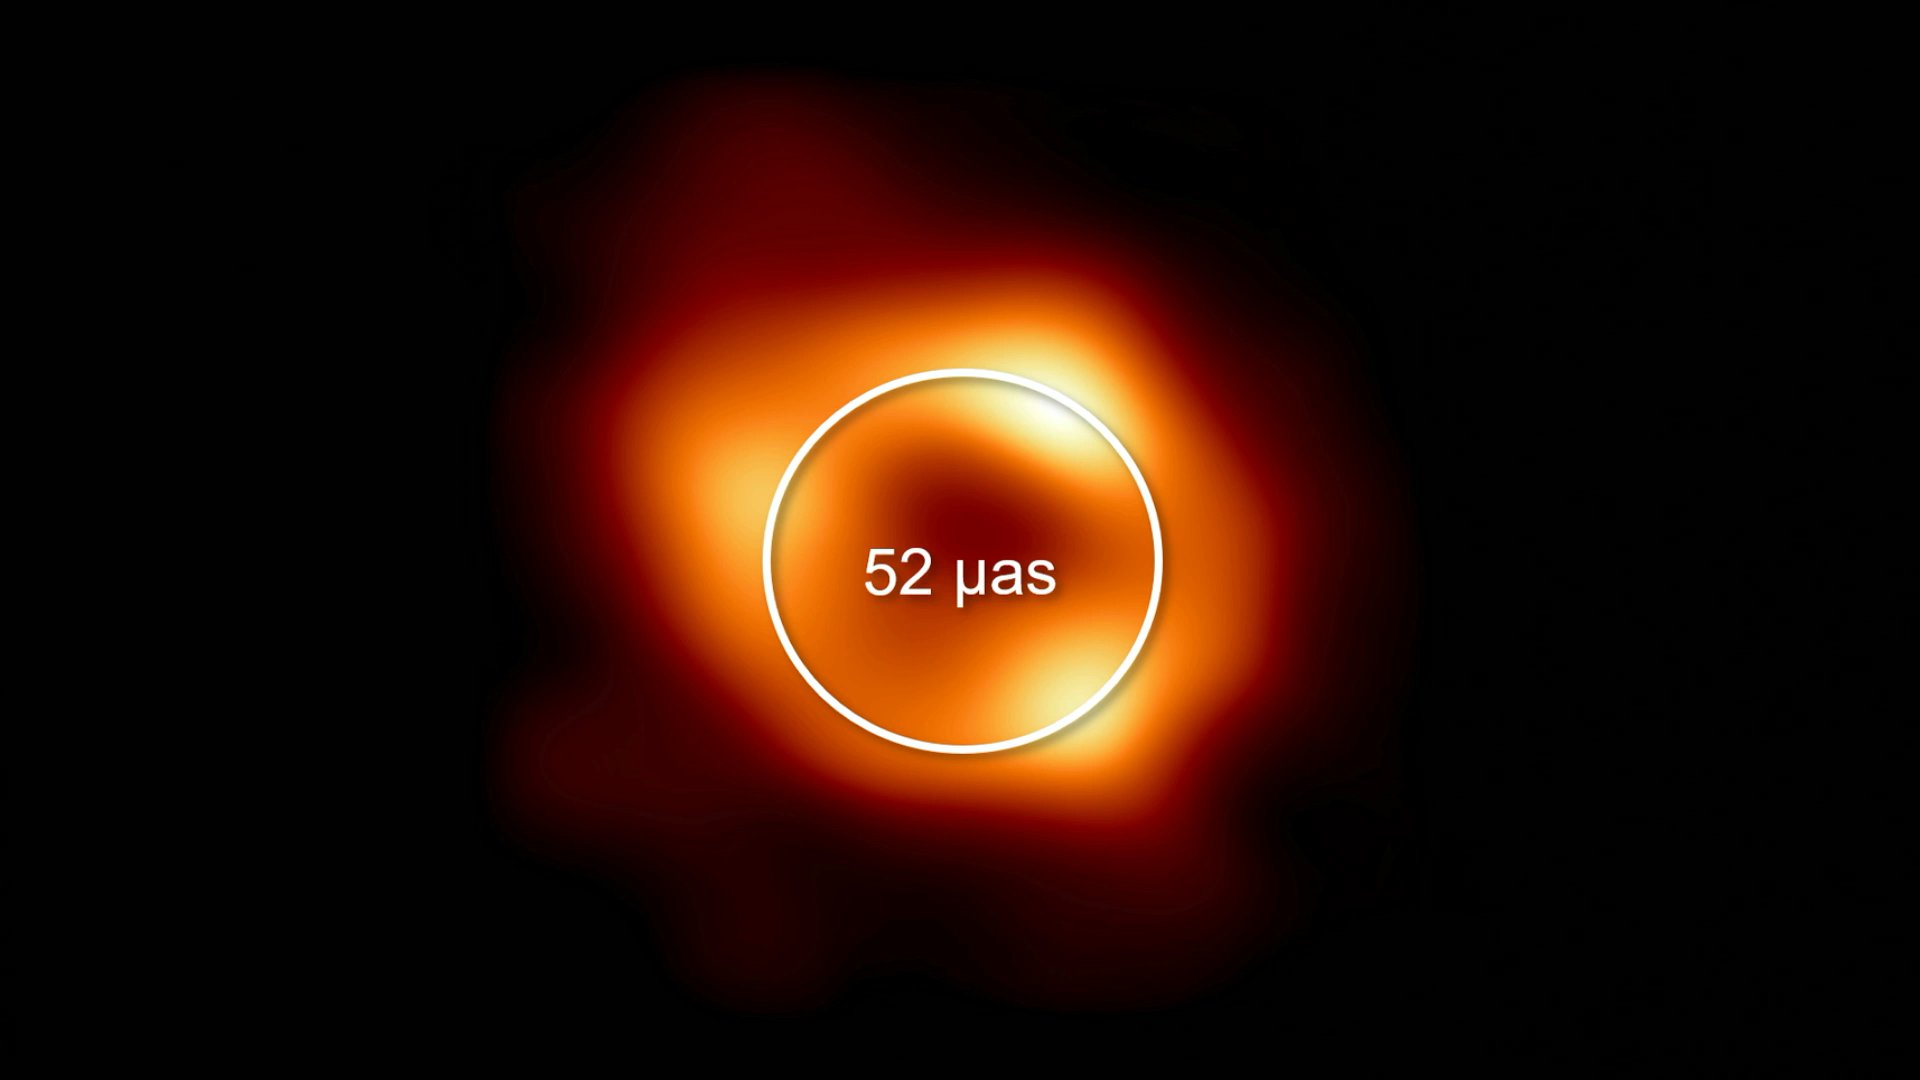 ウナのブラックホールの姿を初めて捉えた…一般相対性ではより正確になった